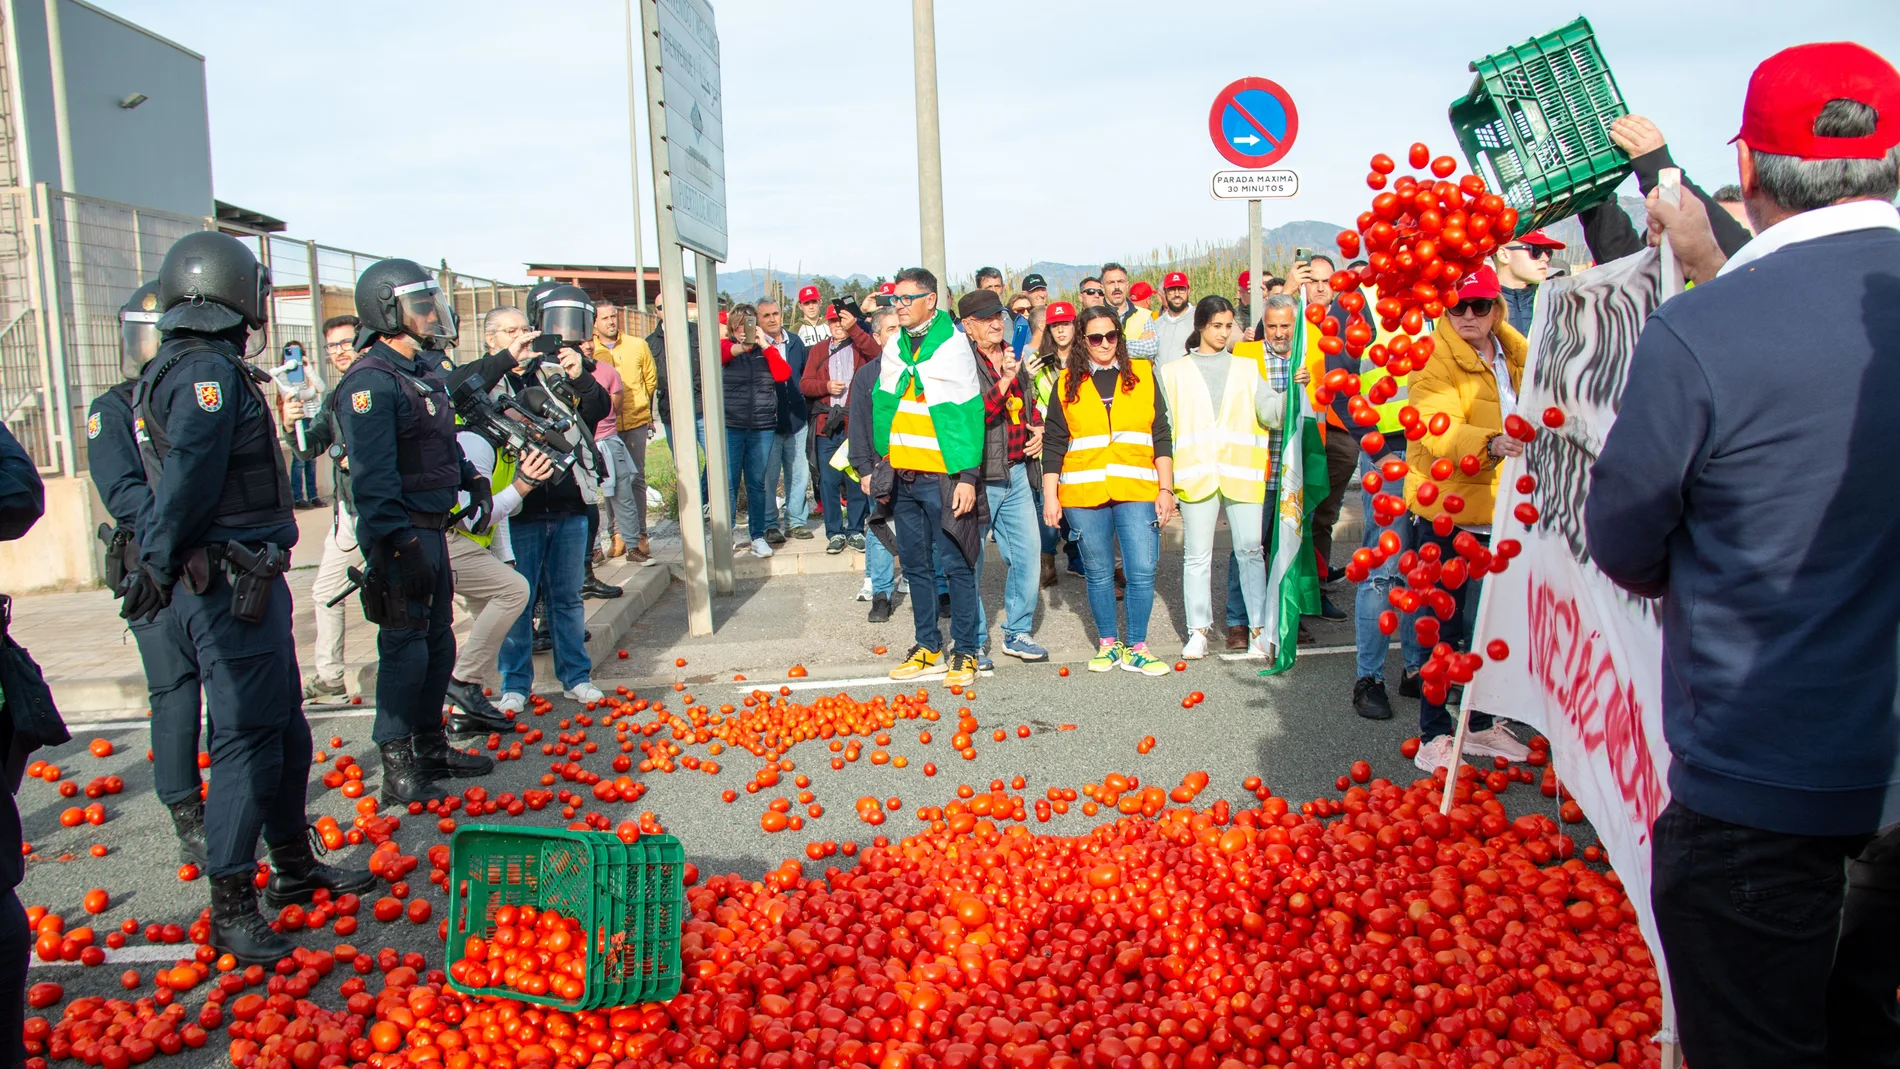  Agricultores arrojan tomates durante la concentración prevista en el puerto de Motril (Granada) 